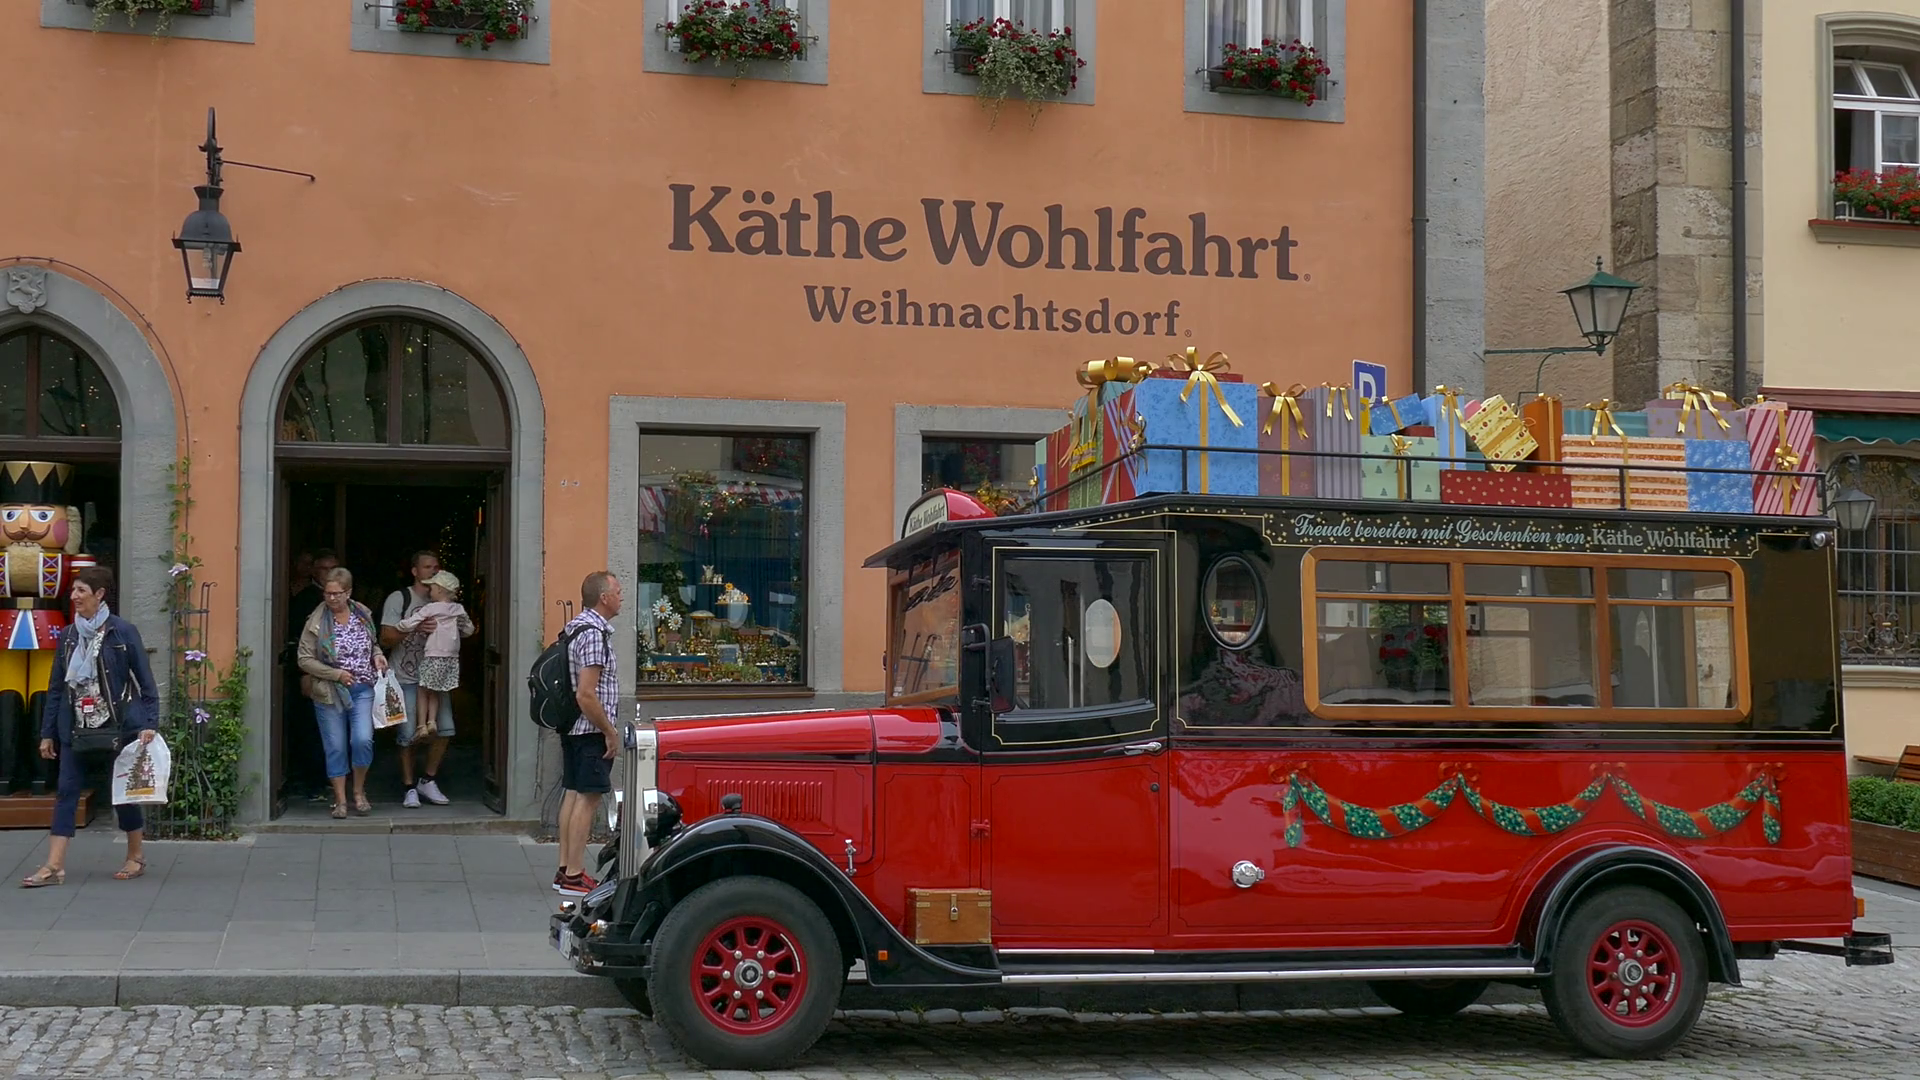 Kaethe Wohlfahrt Weihnachtsdorf shop, a vintage car parking in front ...